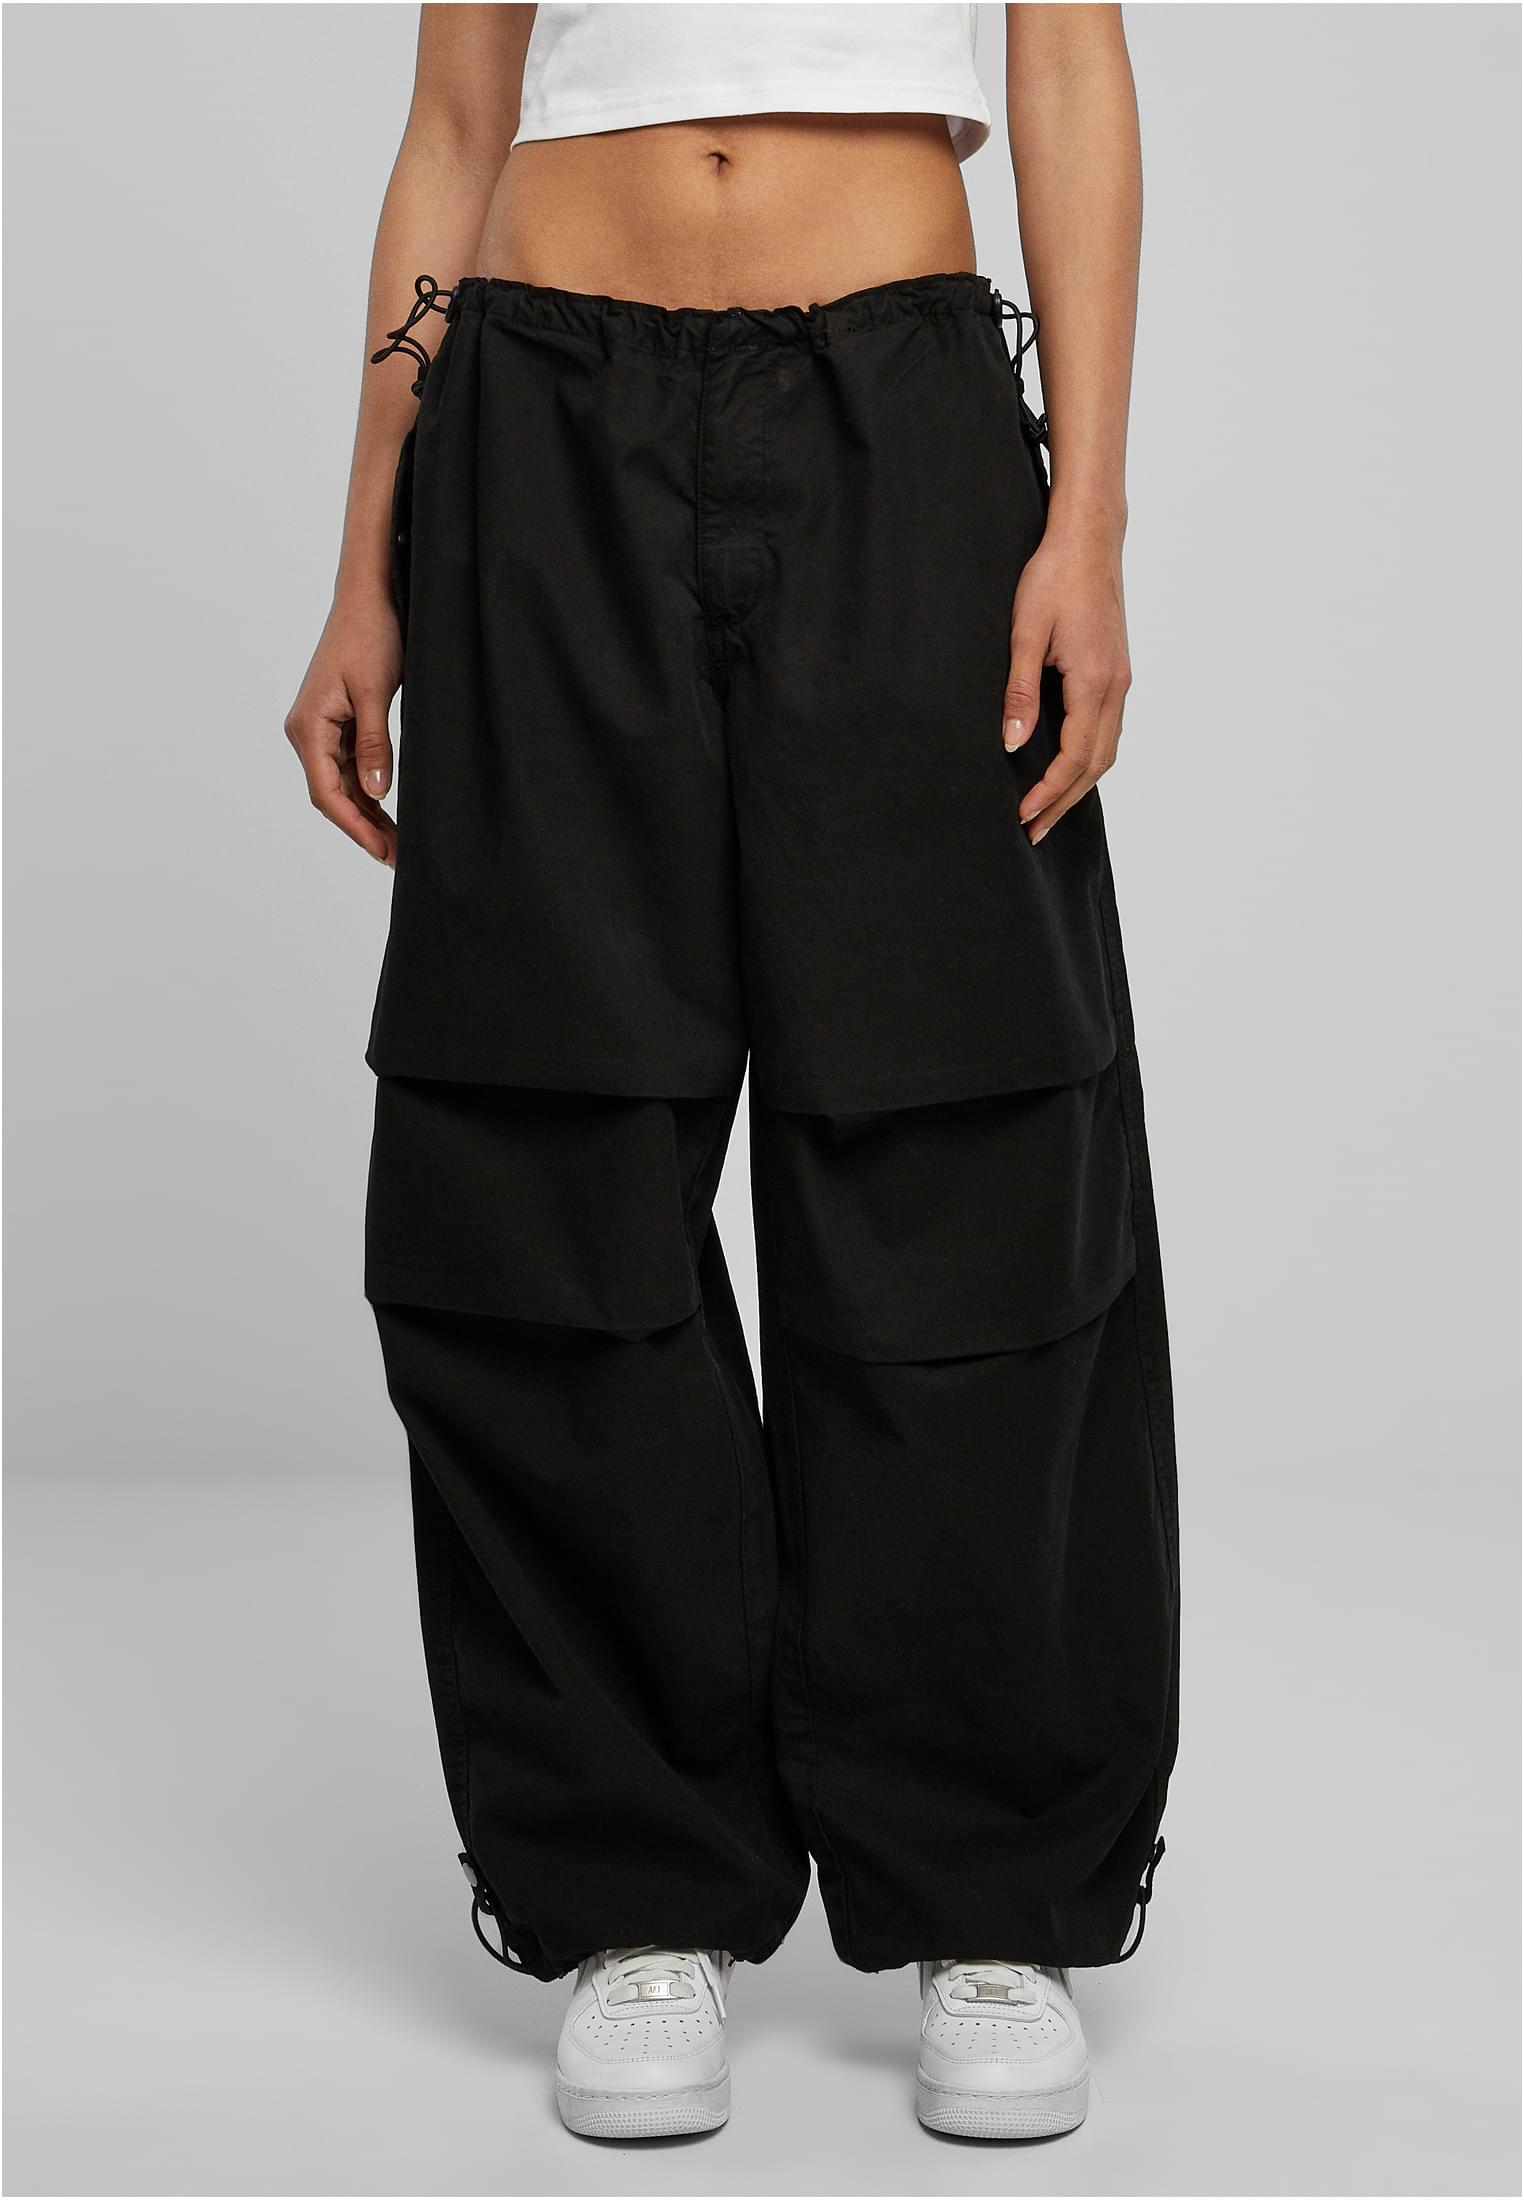 Women's cotton parachute pants black